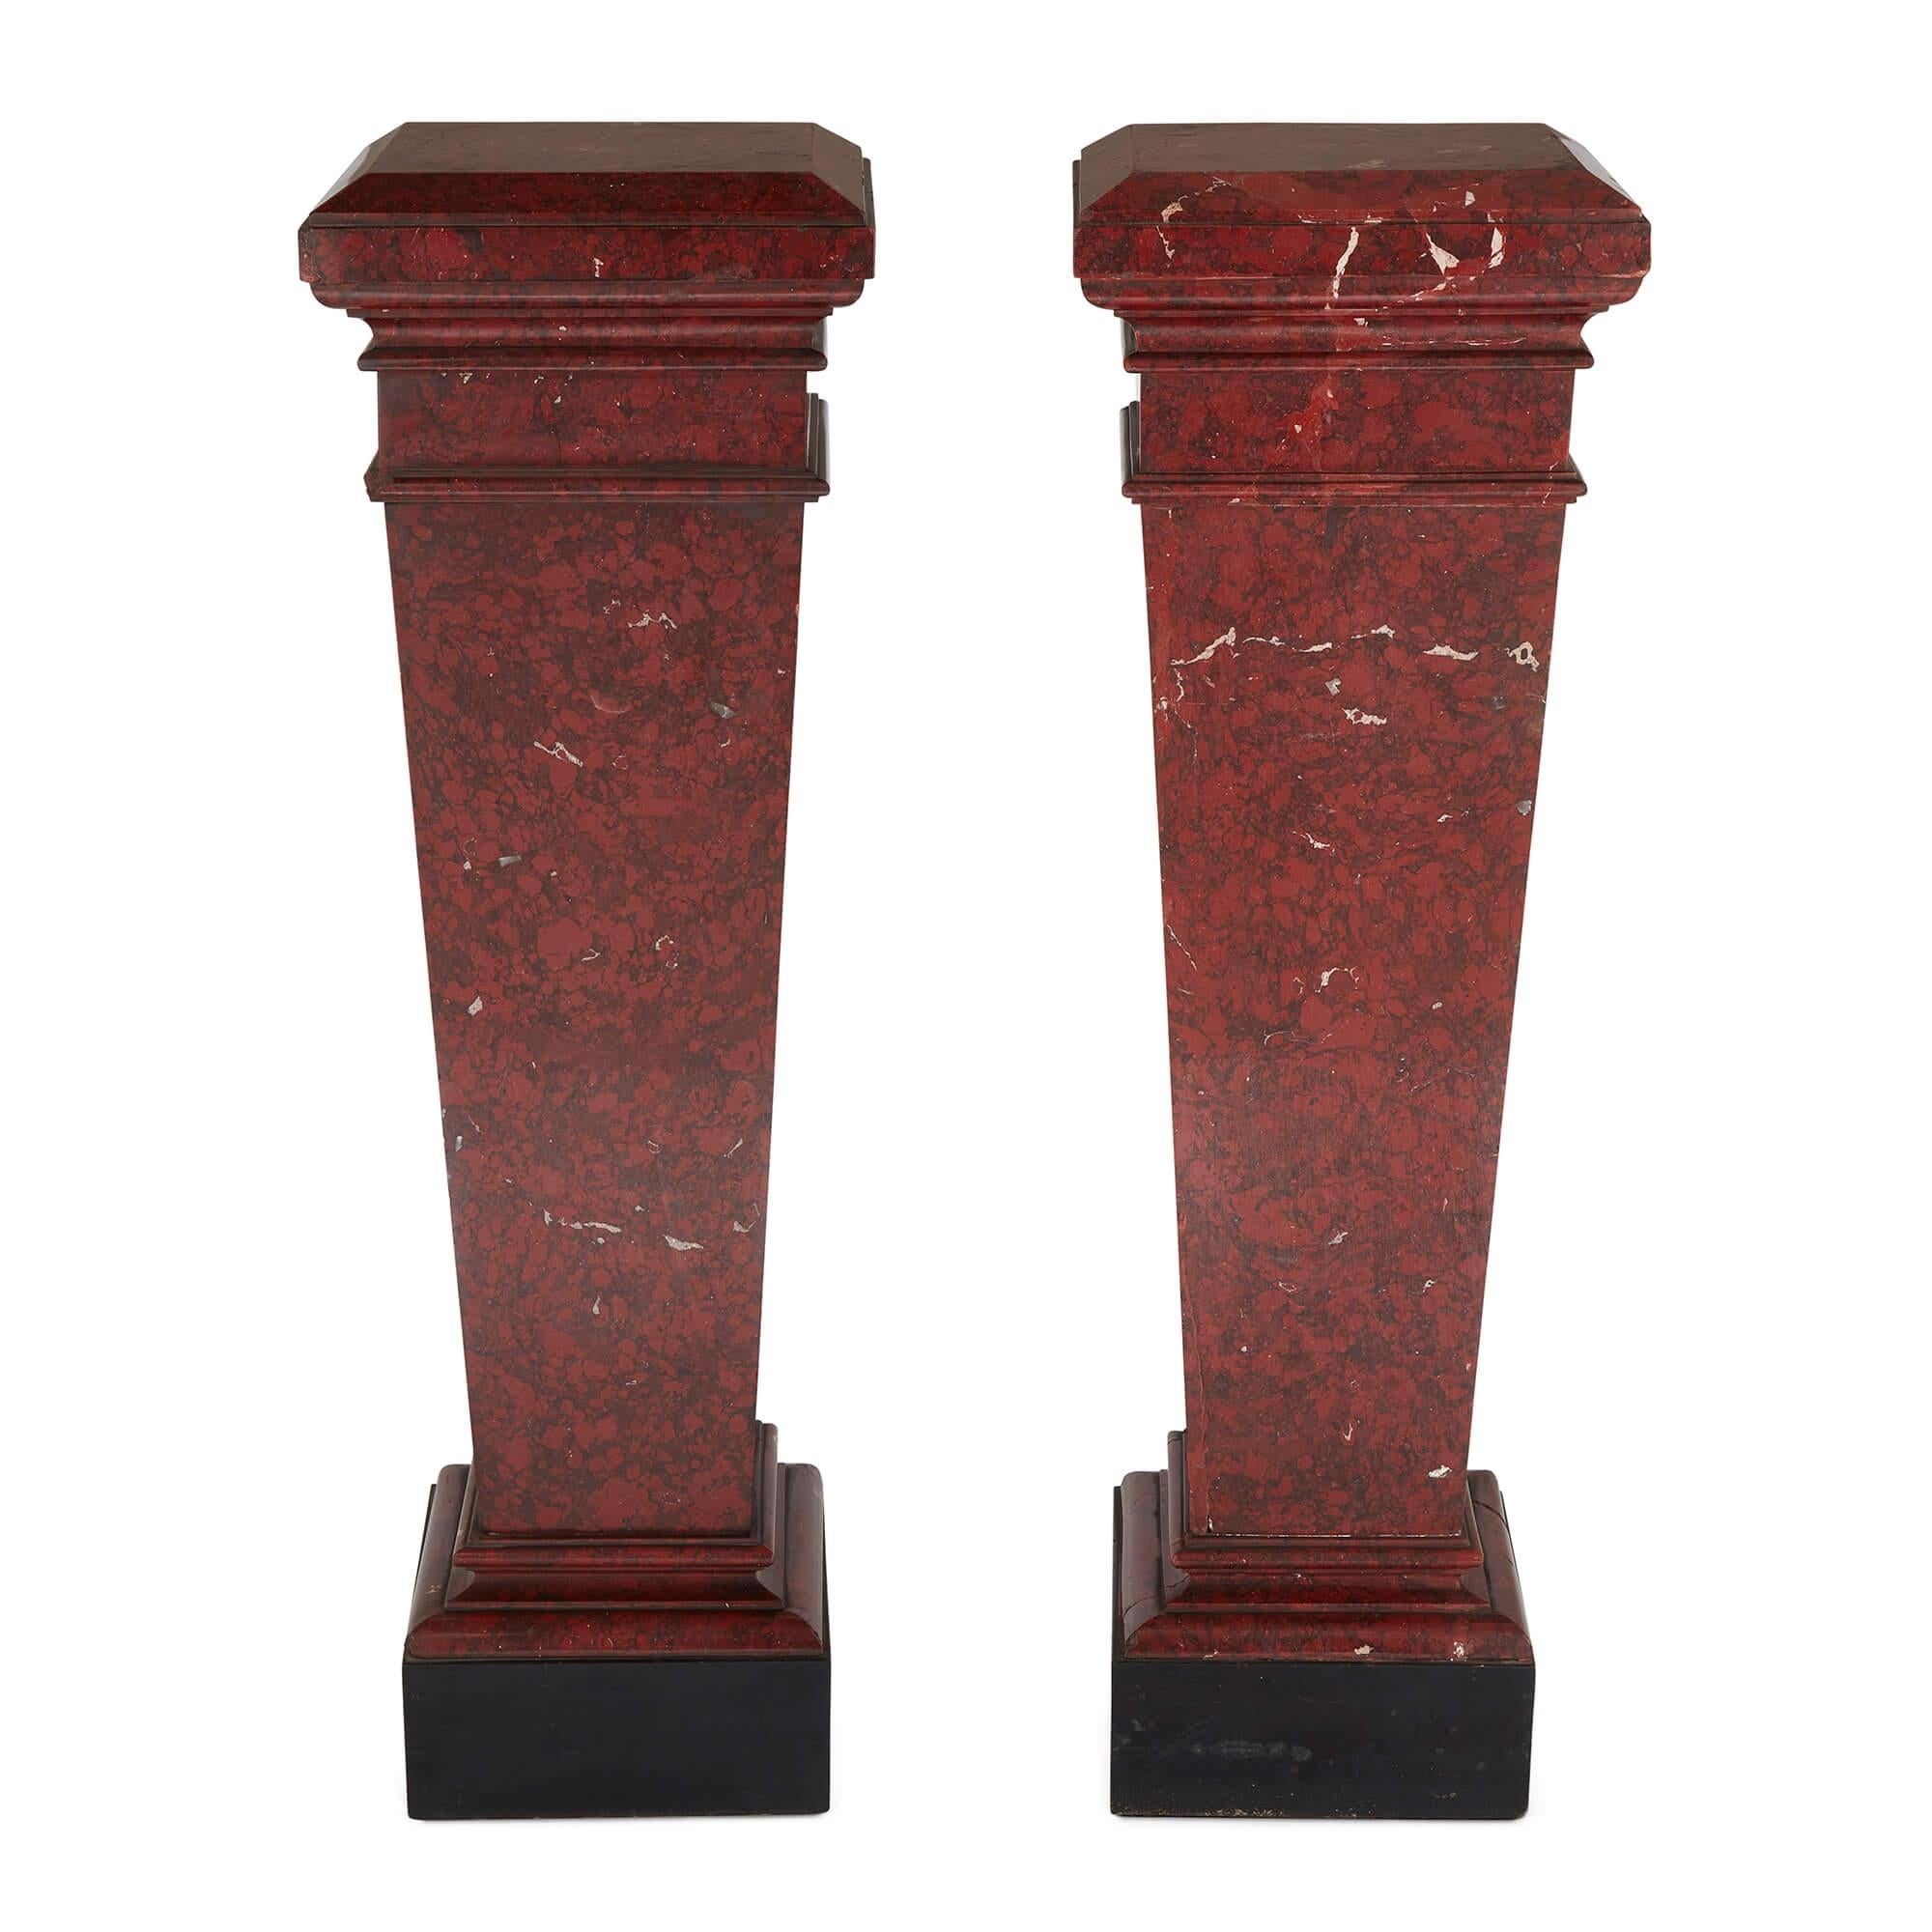 Paar Sockel aus rotem Marmor im neoklassischen Stil
Französisch, 19. Jahrhundert 
Höhe 108cm, Breite 33cm, Tiefe 33cm

Dieses raffinierte Sockelpaar, das im 19. Jahrhundert in Frankreich hergestellt wurde, ist ideal für die Präsentation wertvoller